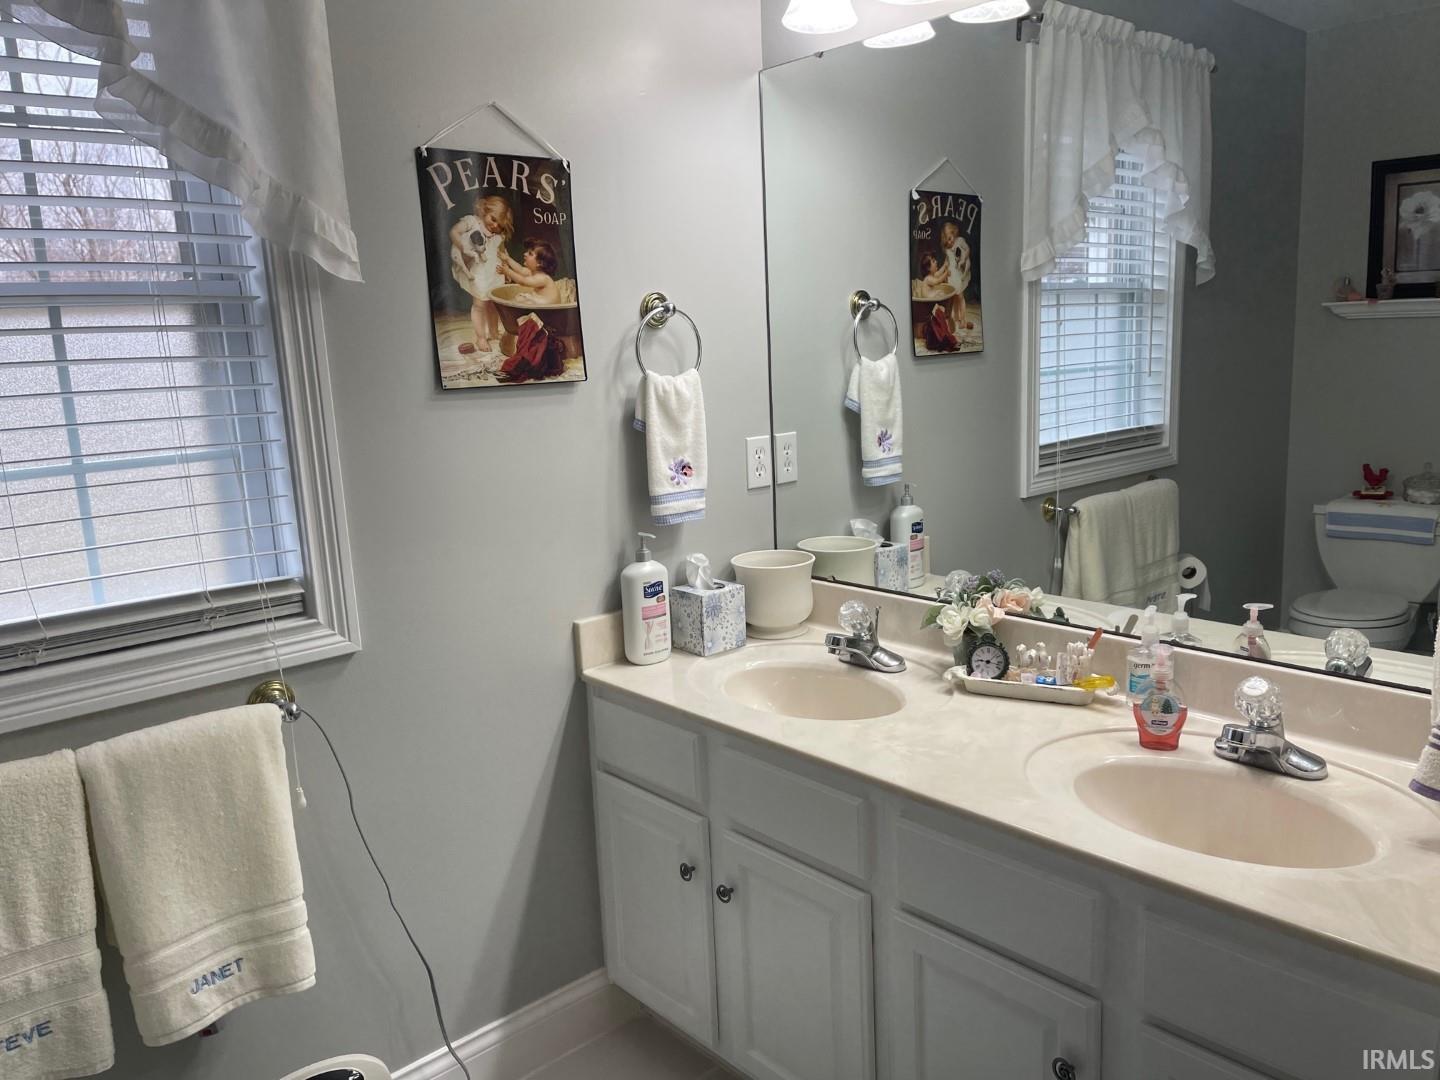 Dual vanity sink and linen closet